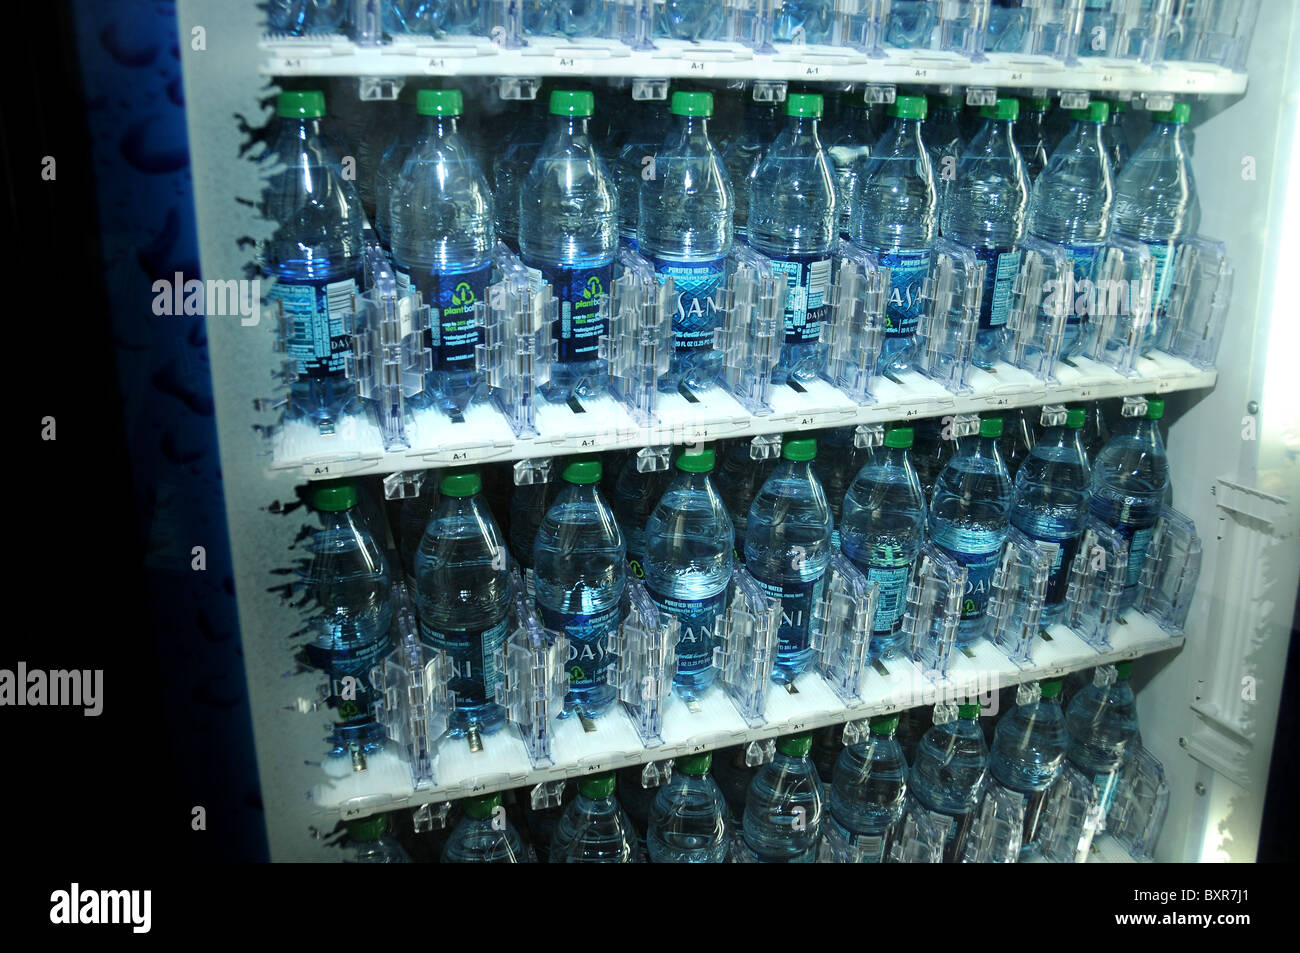 water vending machine price